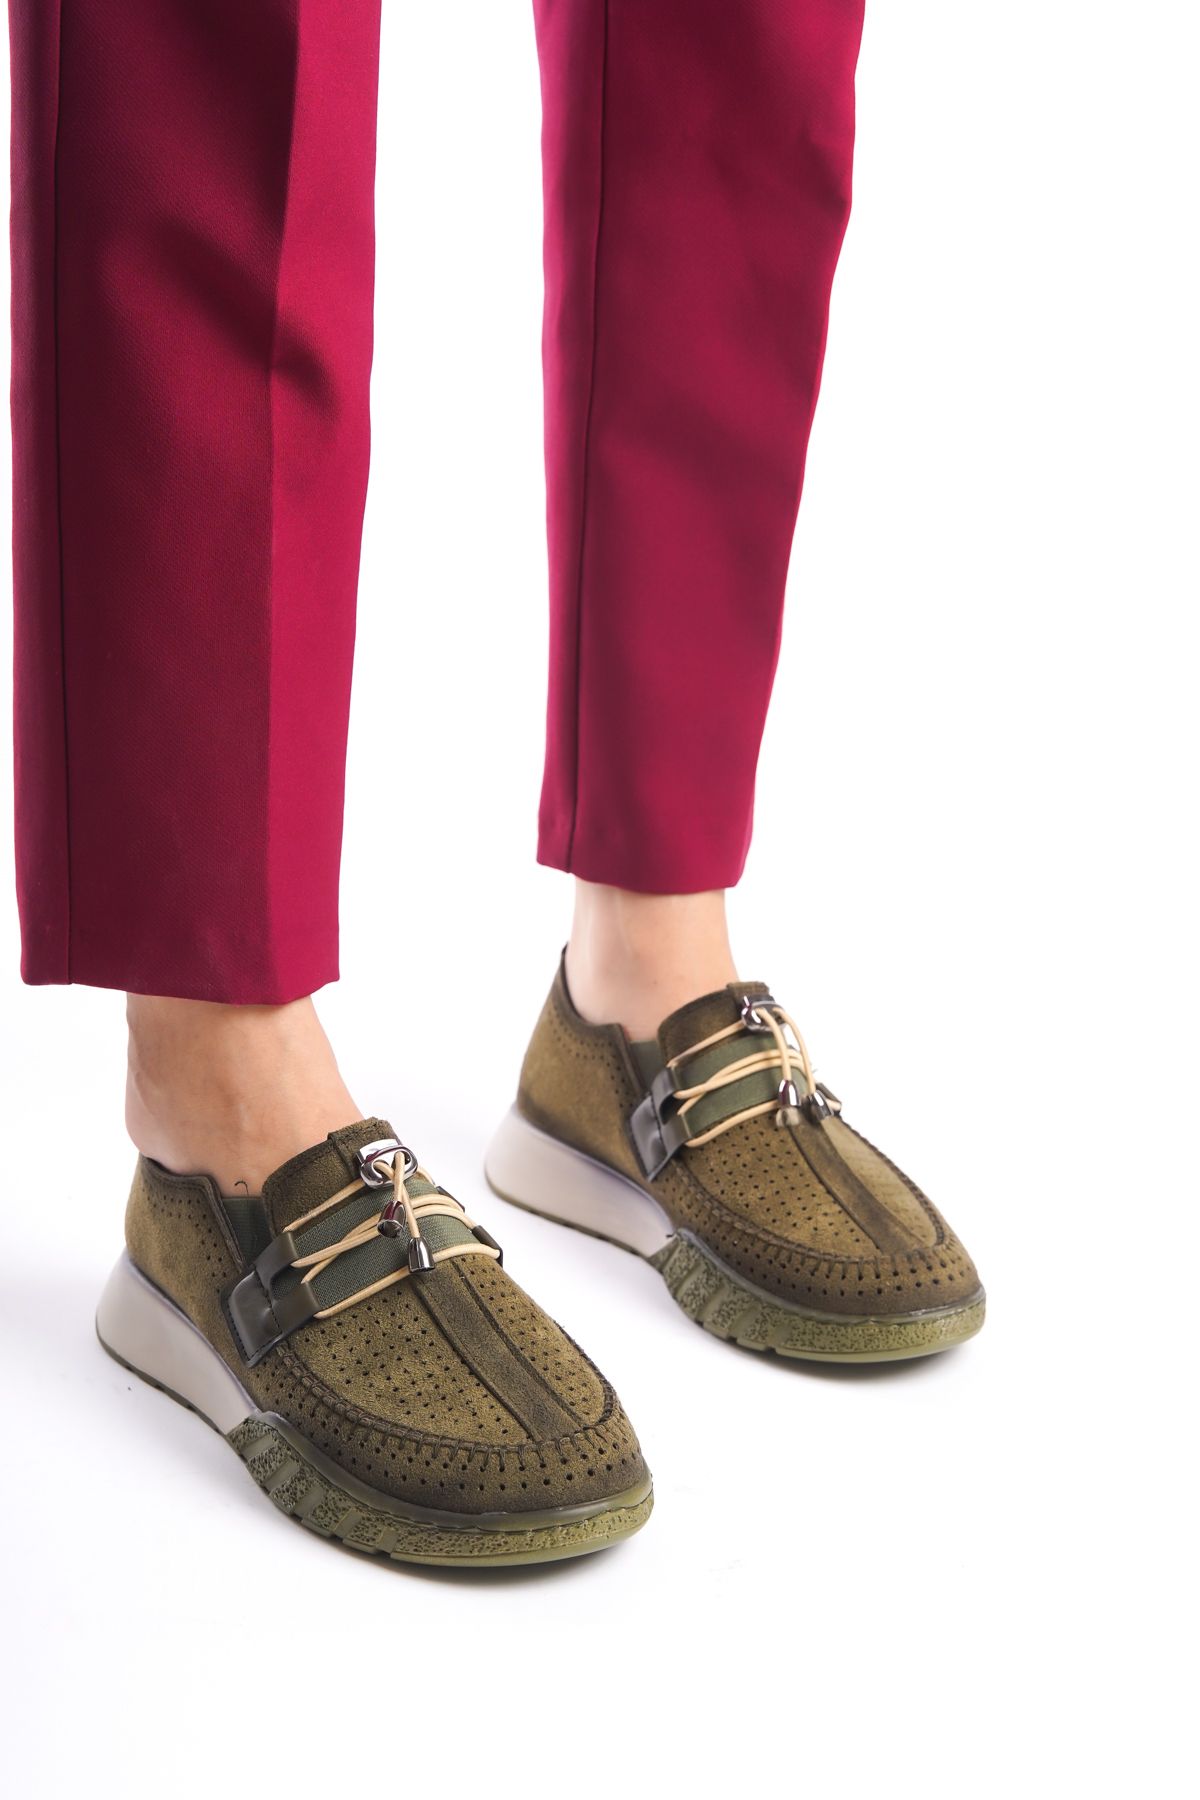 Limeo Haki Yeşil Süet Delikli Bağcık Detaylı Orta Yüksek Taban Günlük Kadın Casual Spor Ayakkabı